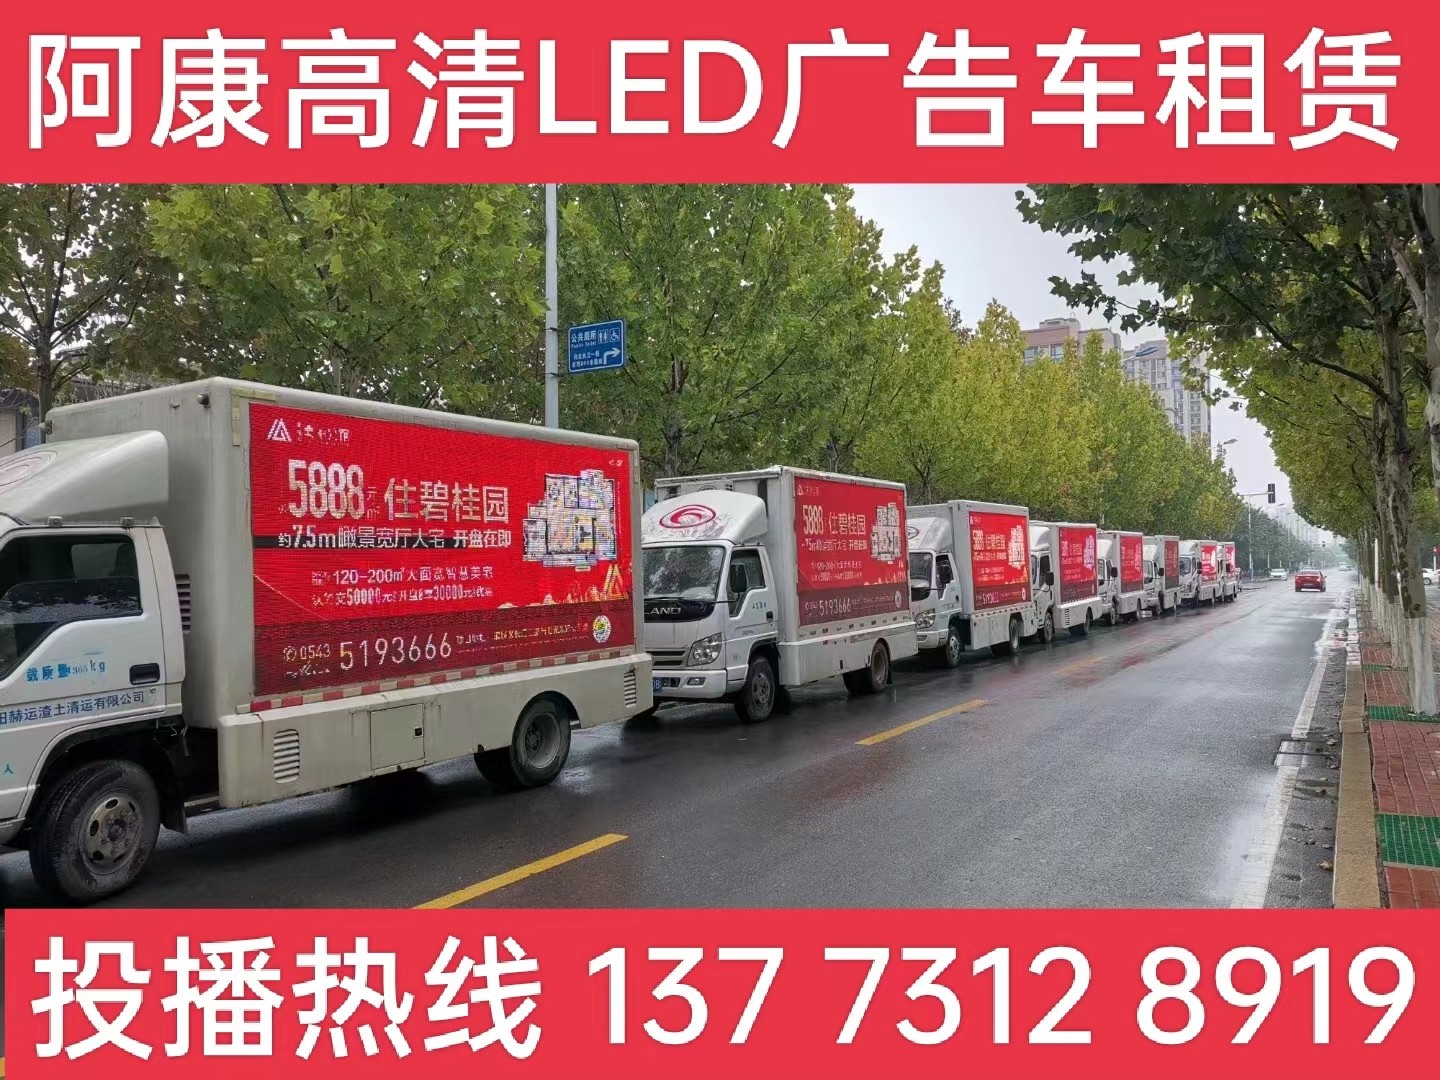 靖江宣传车租赁公司-楼盘LED广告车投放